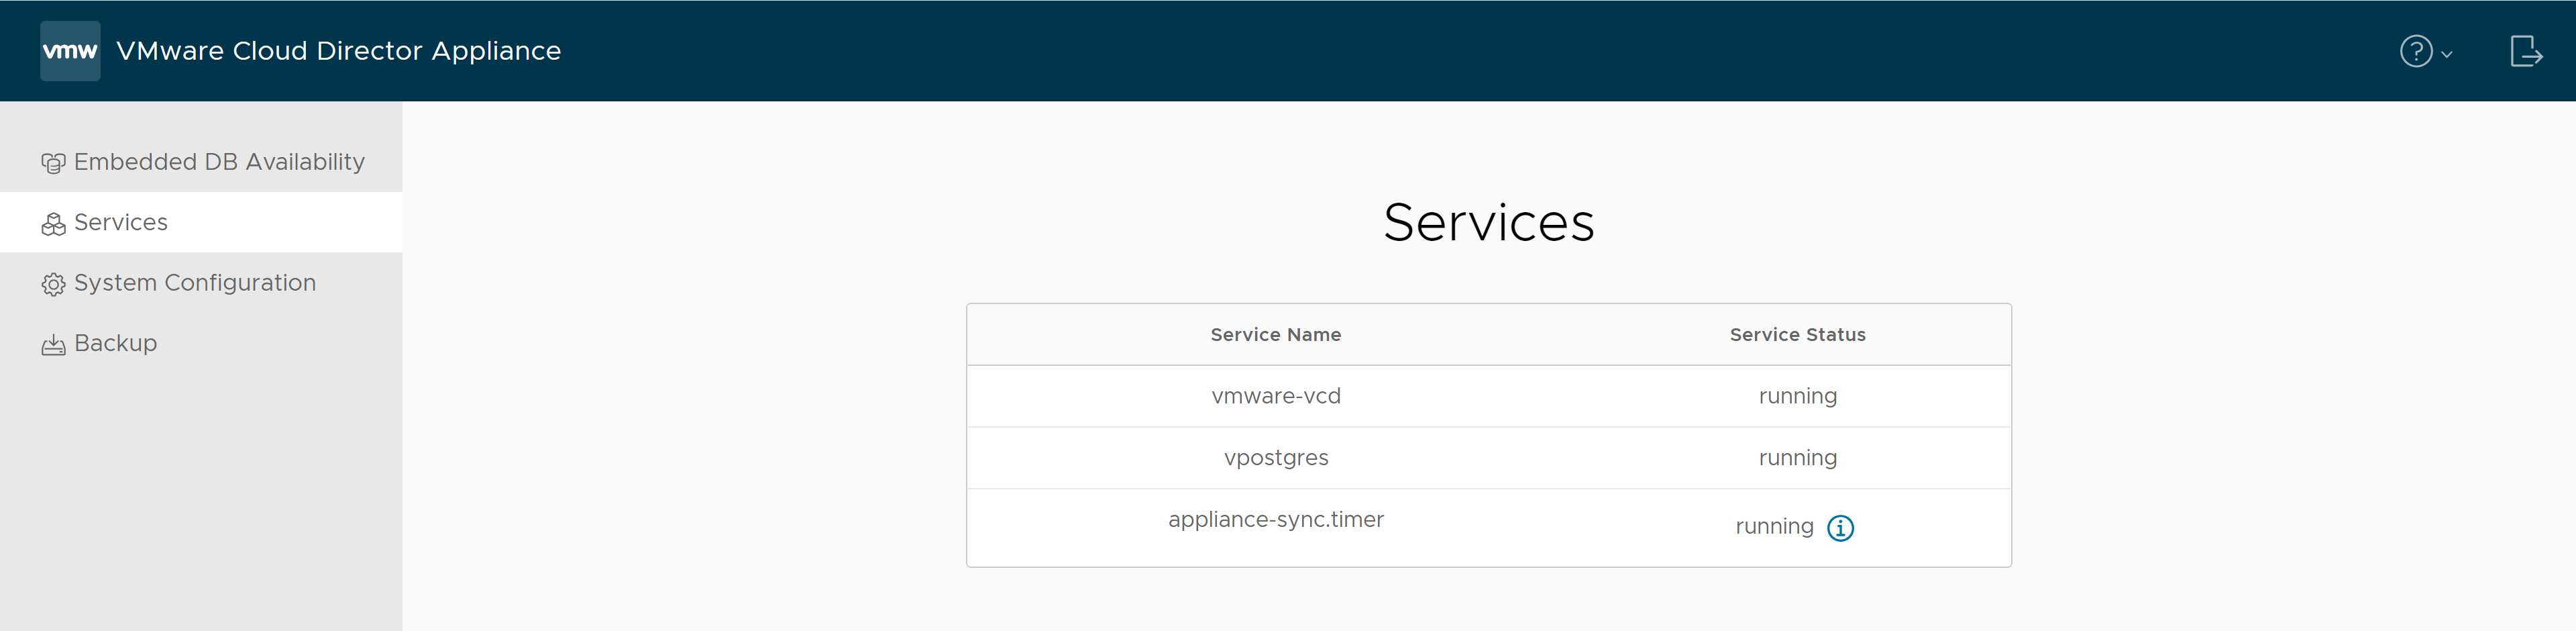 Sur l'onglet Services de l'interface utilisateur de gestion des dispositifs VMware Cloud Director, vous trouverez les noms des services et leurs états.